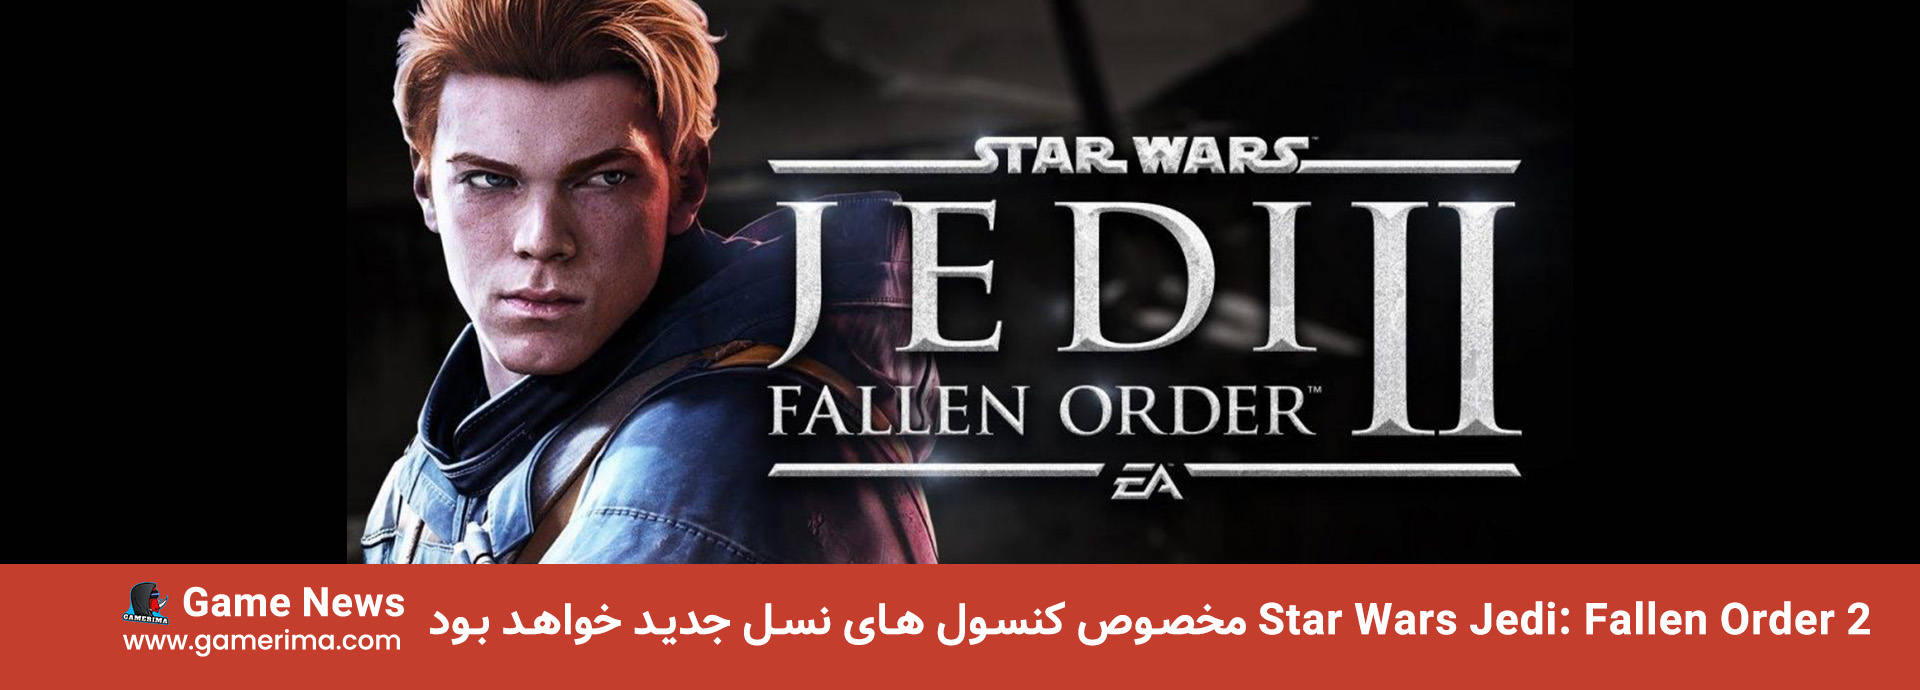 Star Wars Jedi: Fallen Order 2 مخصوص کنسول های نسل جدید خواهد بود